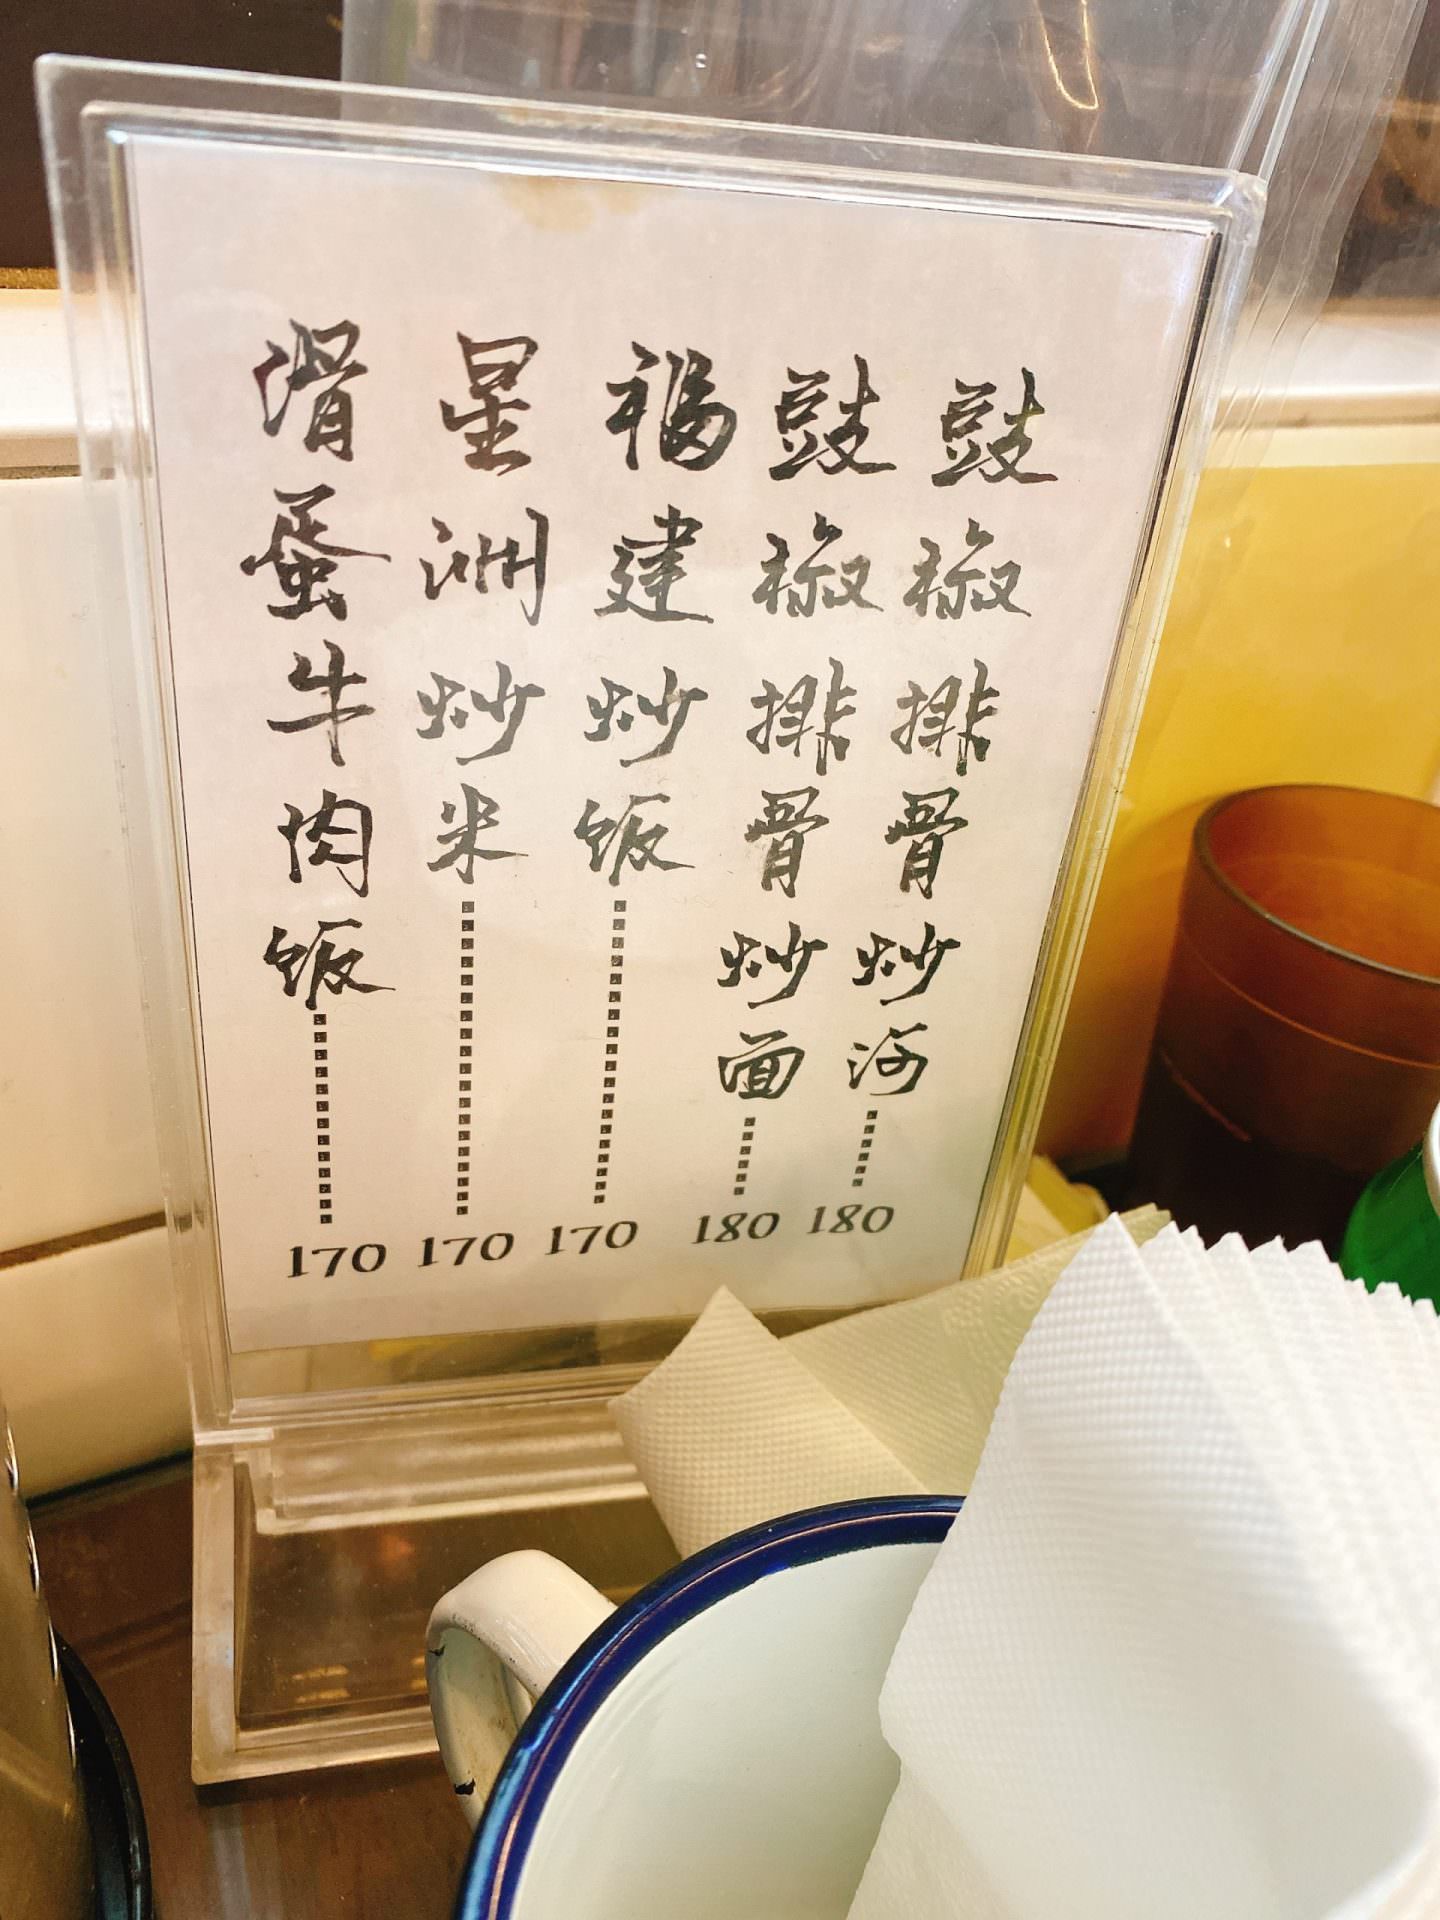 【食記】台北松山【香港特別行運冰室】港式茶餐廳料理美食、近捷運南京復興站